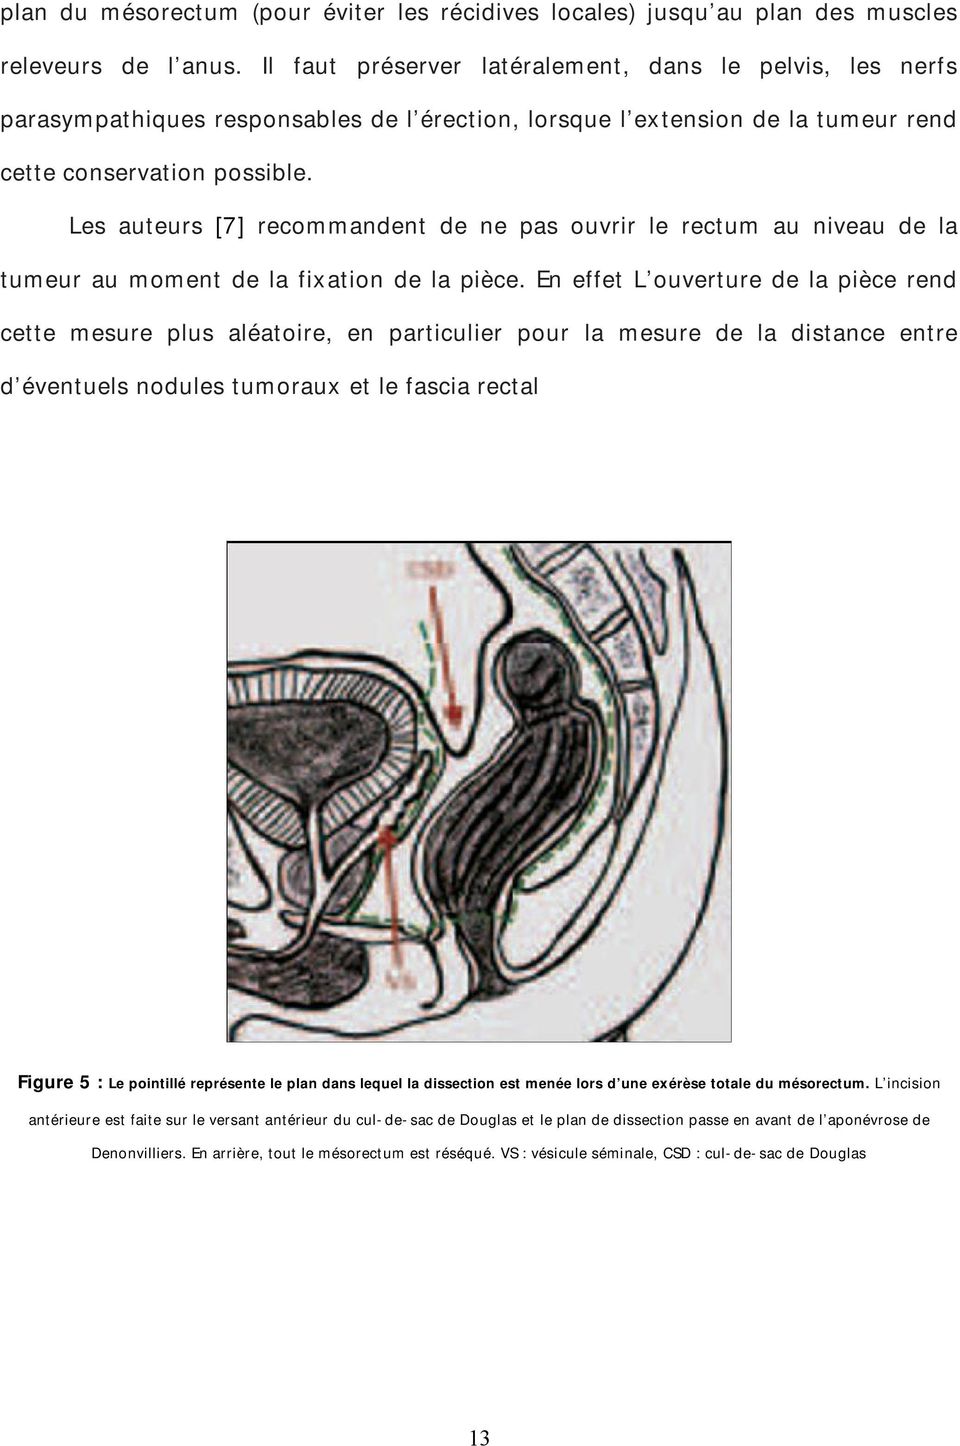 Les auteurs [7] recommandent de ne pas ouvrir le rectum au niveau de la tumeur au moment de la fixation de la pièce.